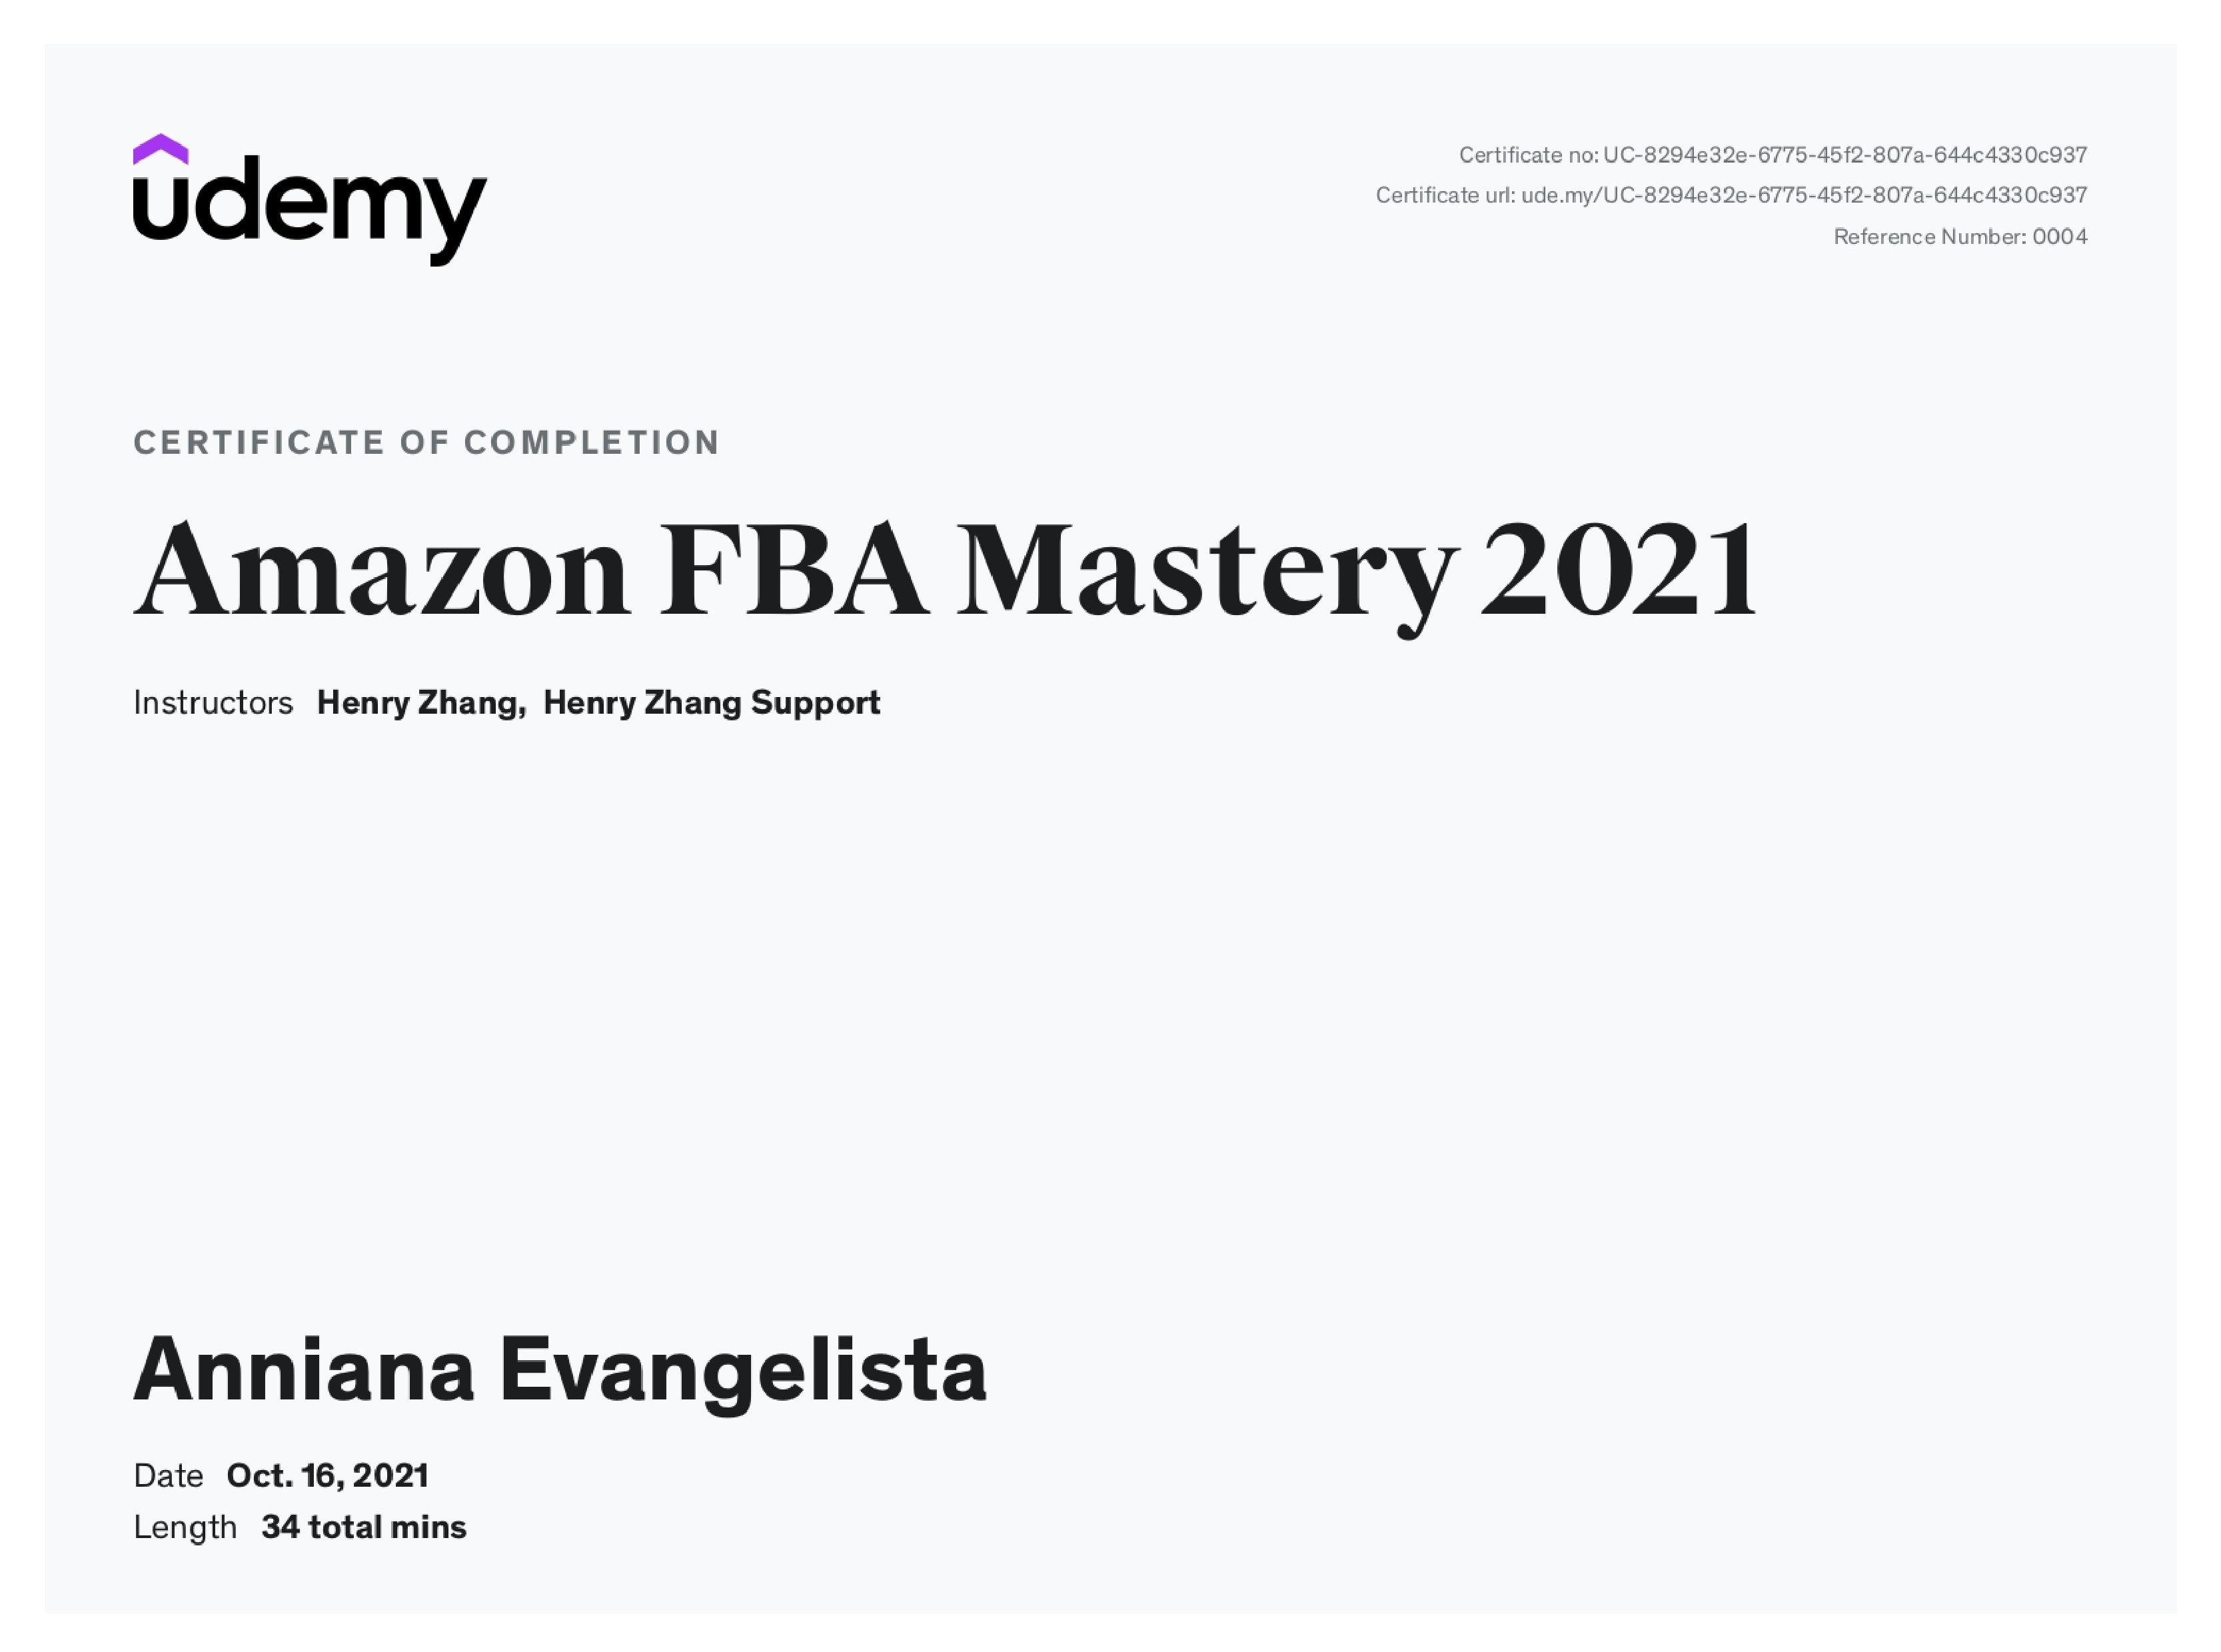 Amazon FBA Mastery 2021